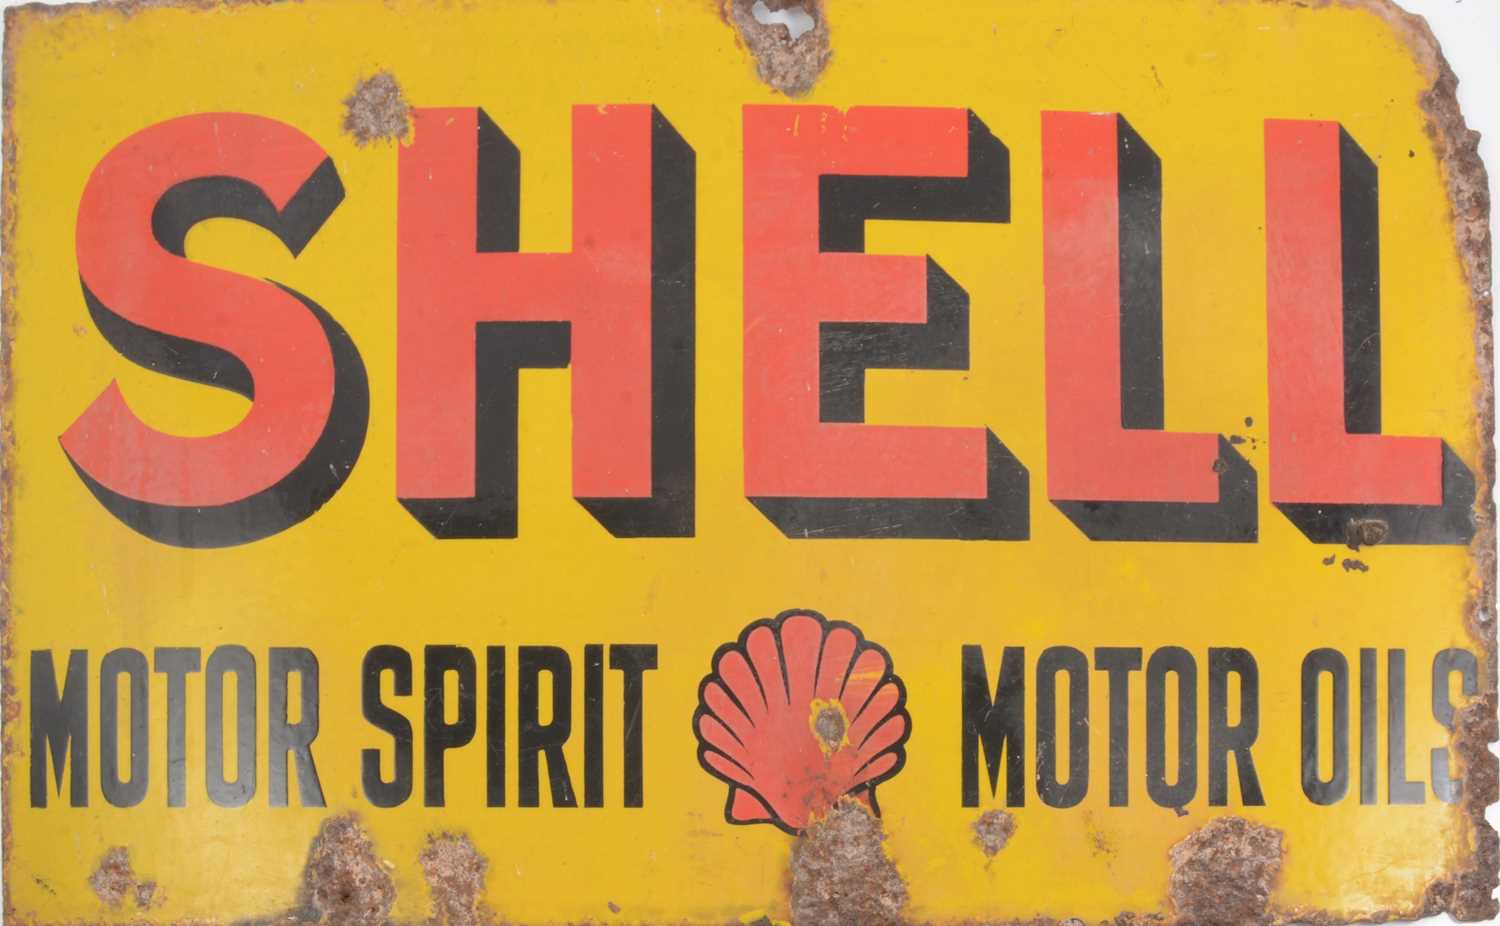 Lot 125 - SHELL - MOTOR SPIRIT - MOTOR OILS, enamelled advertising sign.